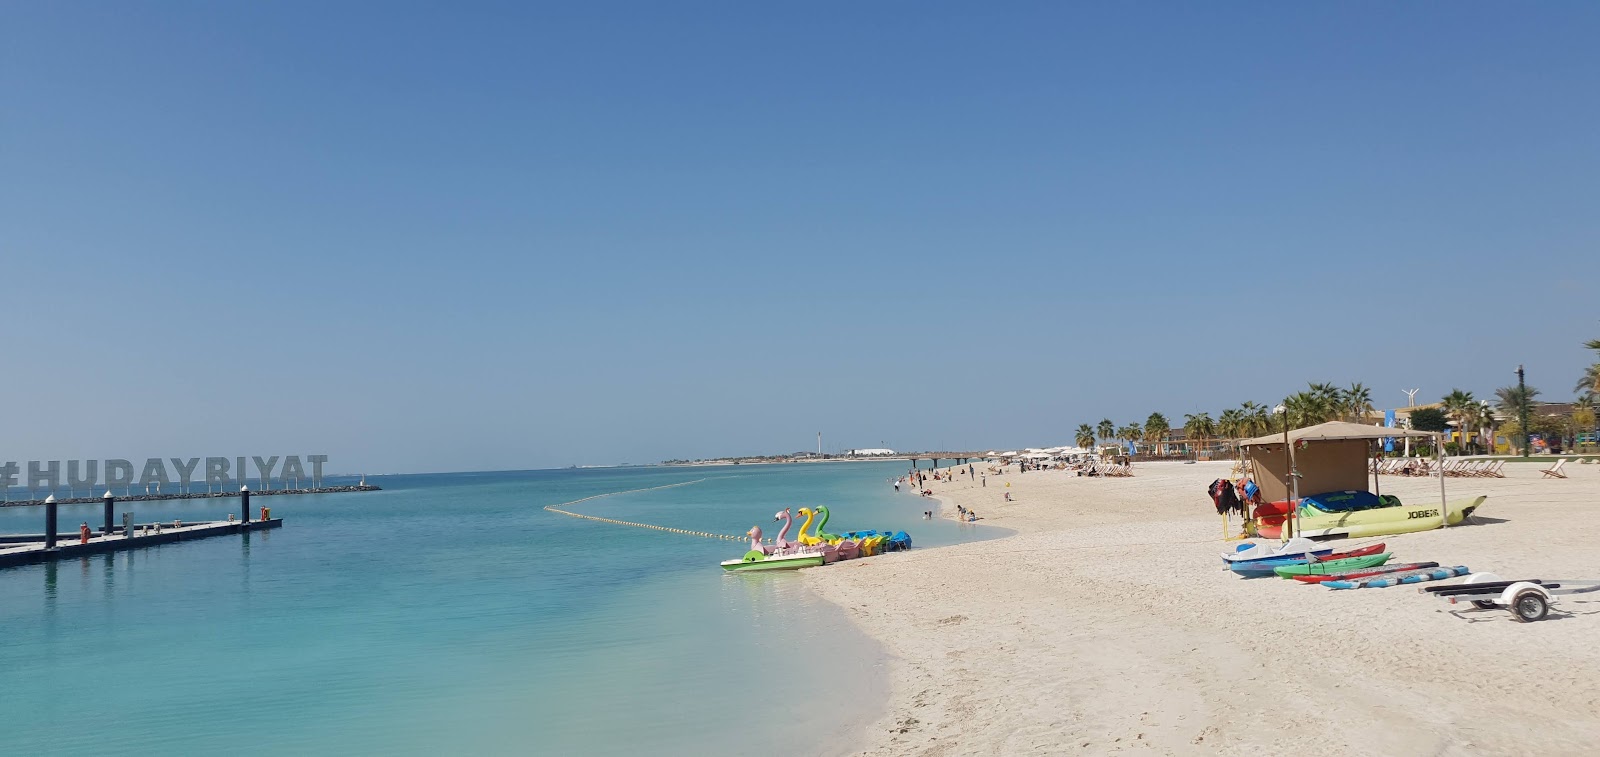 Fotografie cu Al Hudayriat Beach zonele de facilități